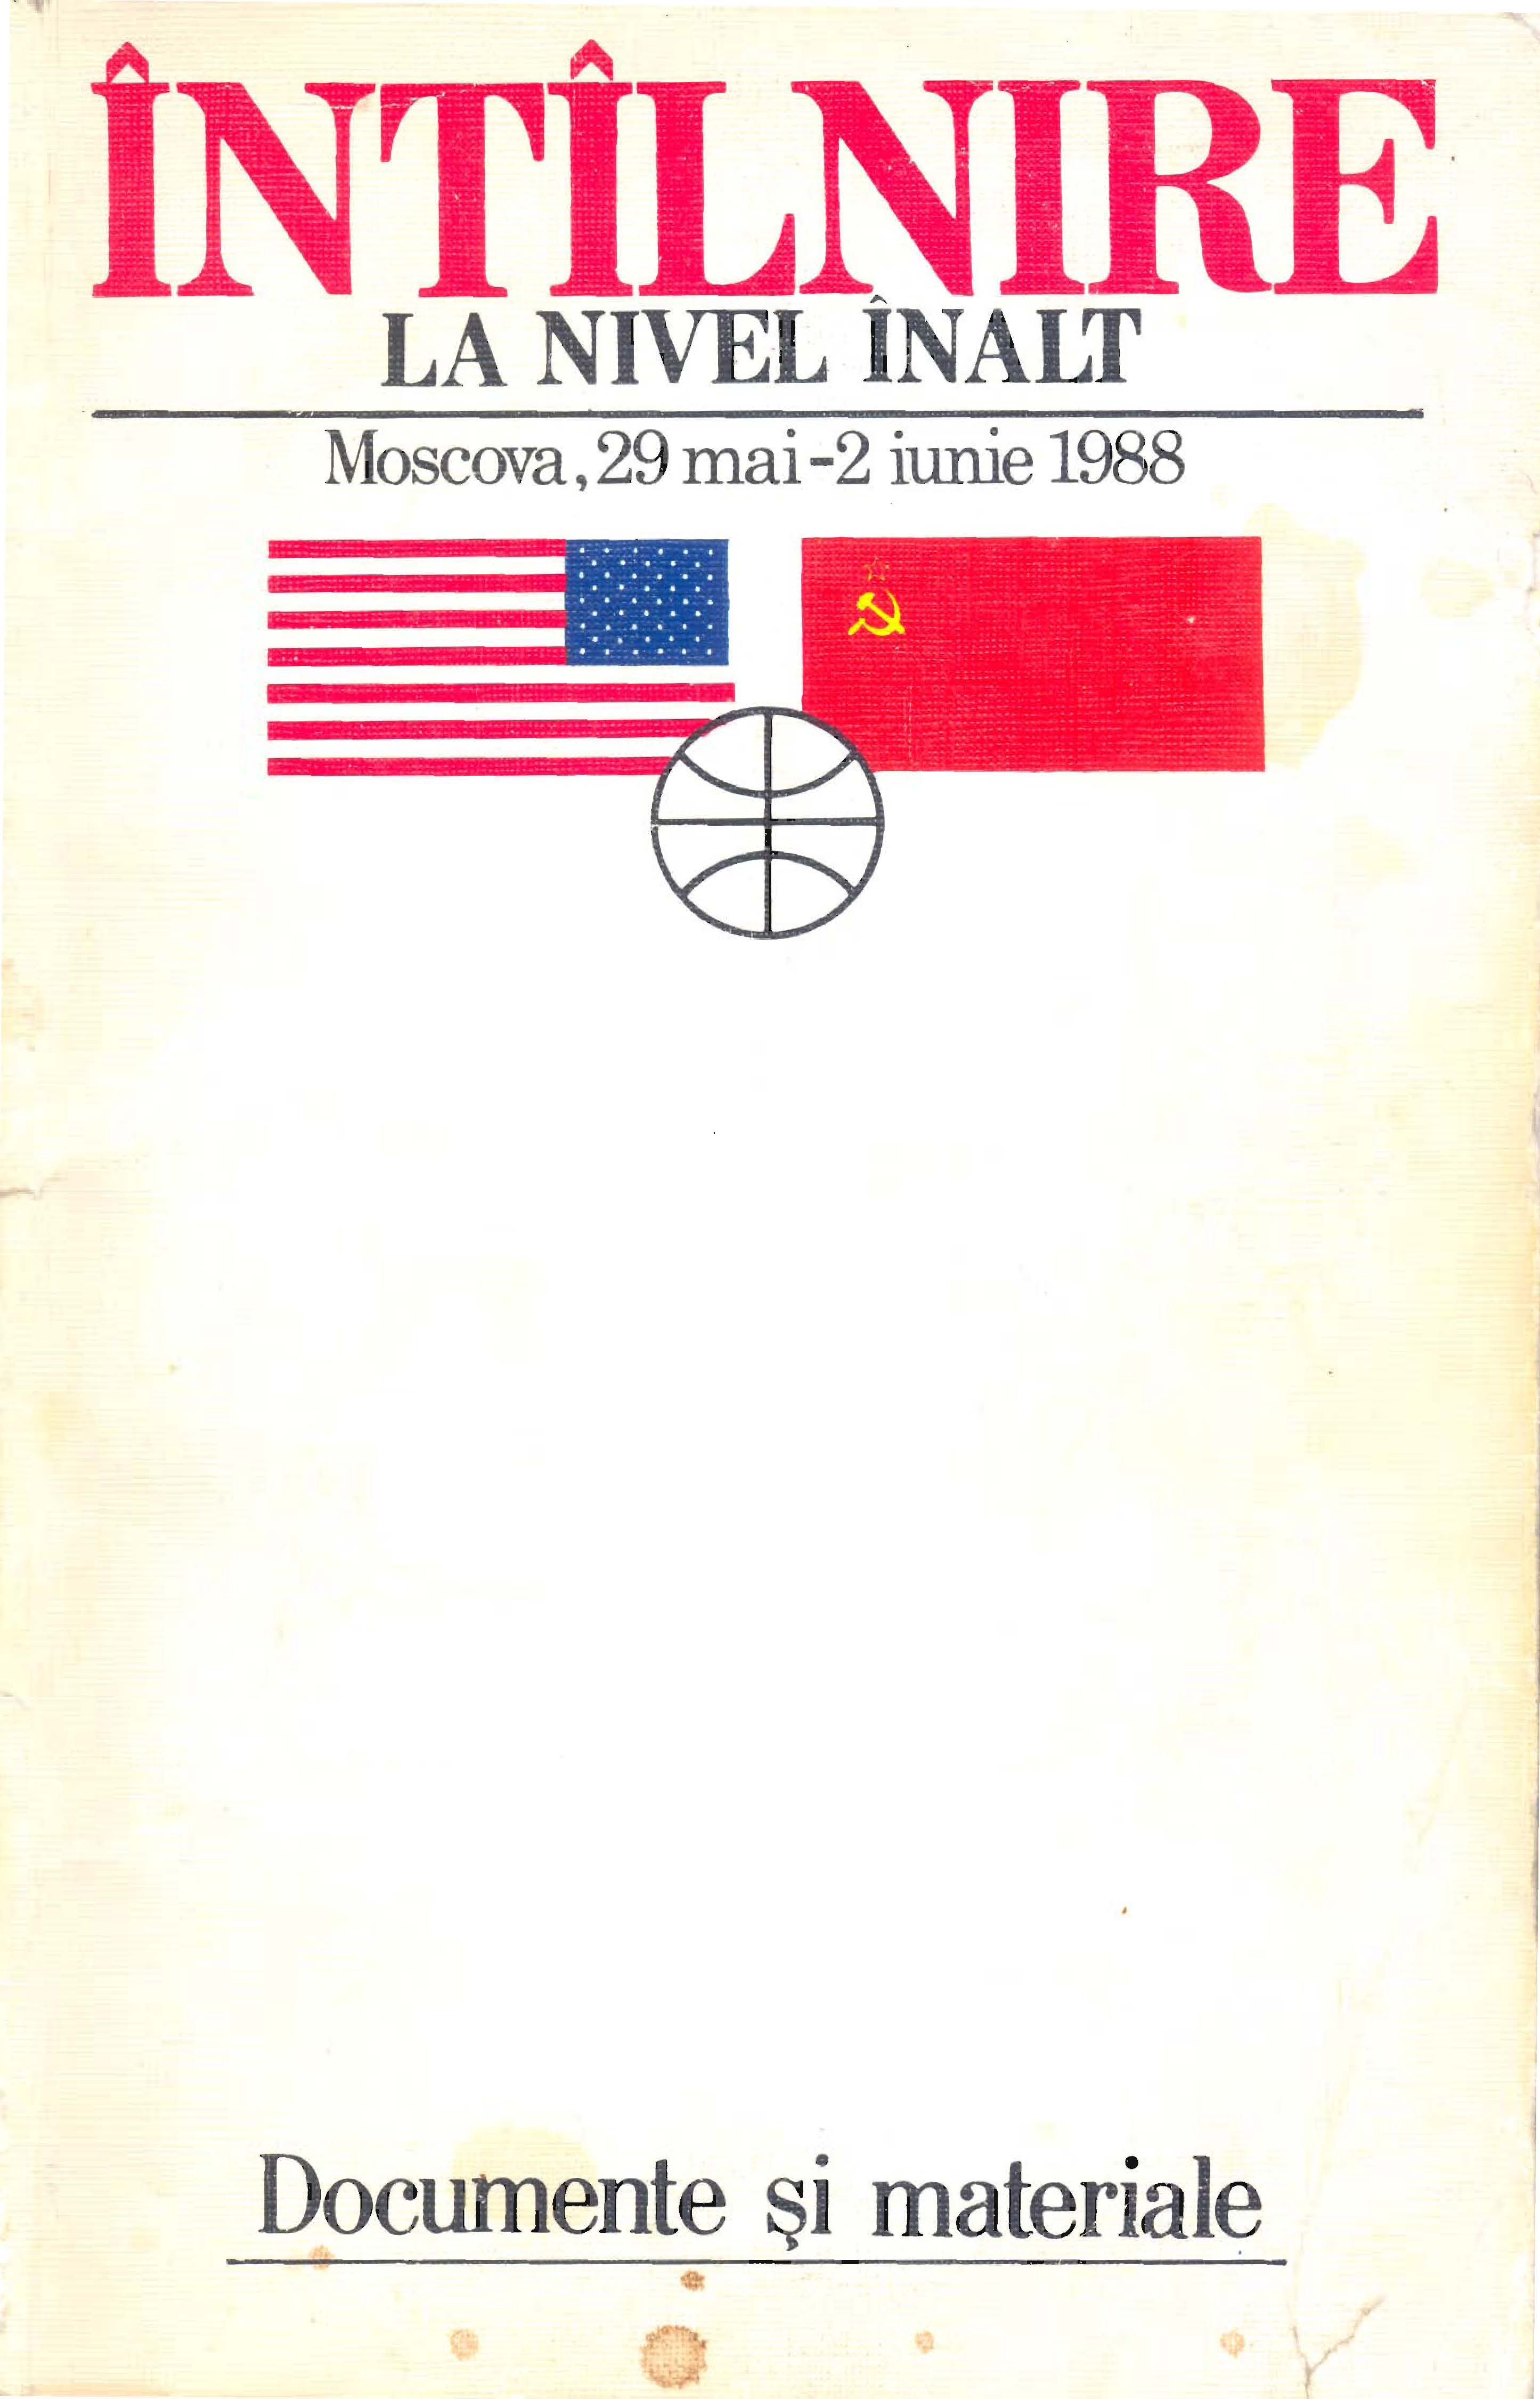 Coperta cărții despre întâlnirea dintre Gorbaciov și Reagan de la Moscova, mai-iunie 1988 